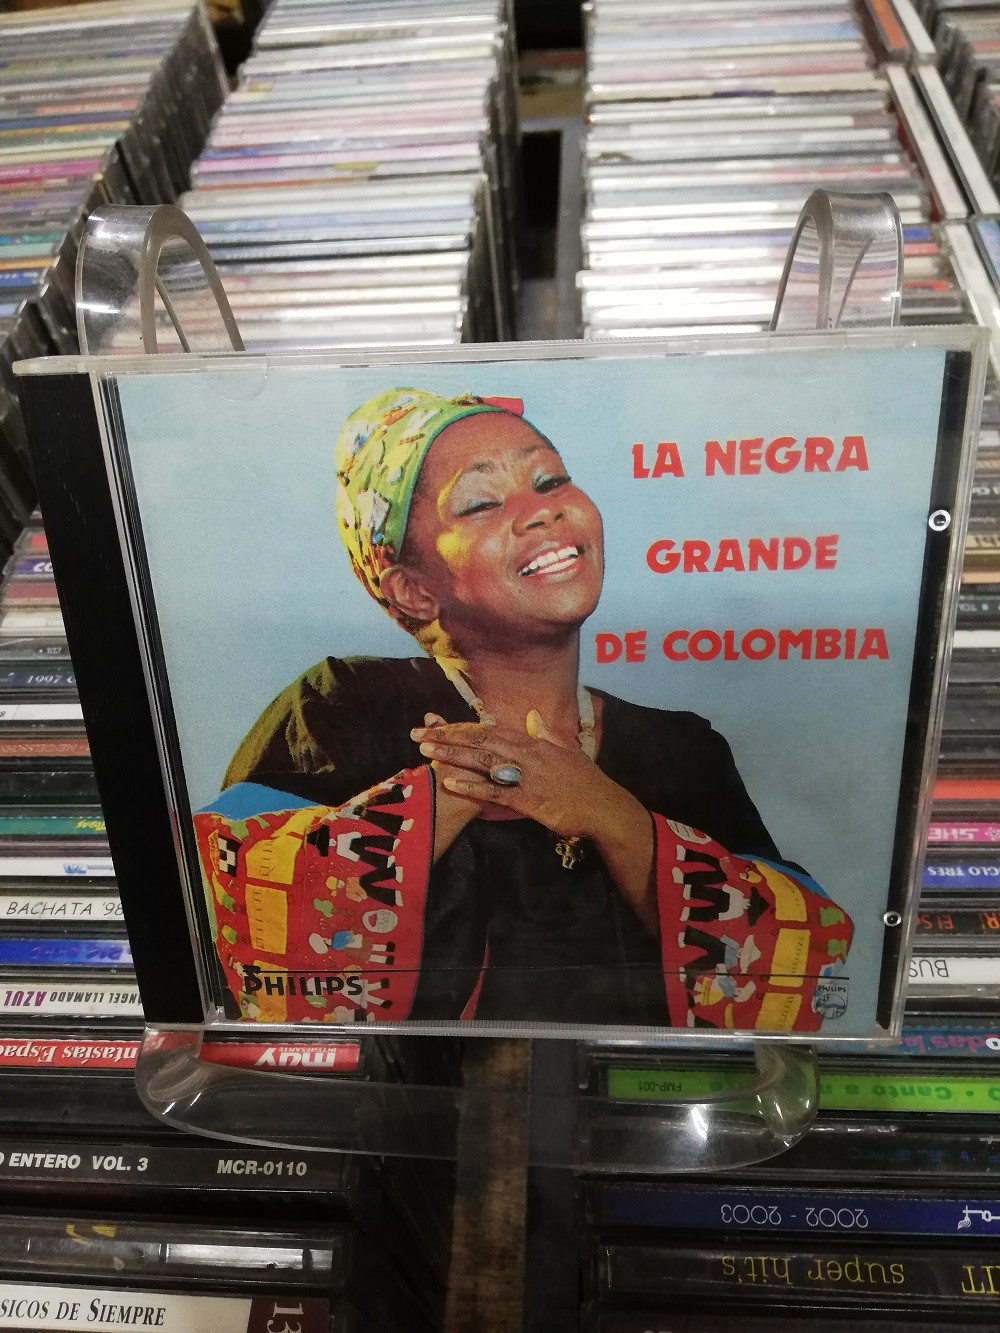 Imagen CD CUMBIA LA NEGRA GRANDE DE COLOMBIA 1